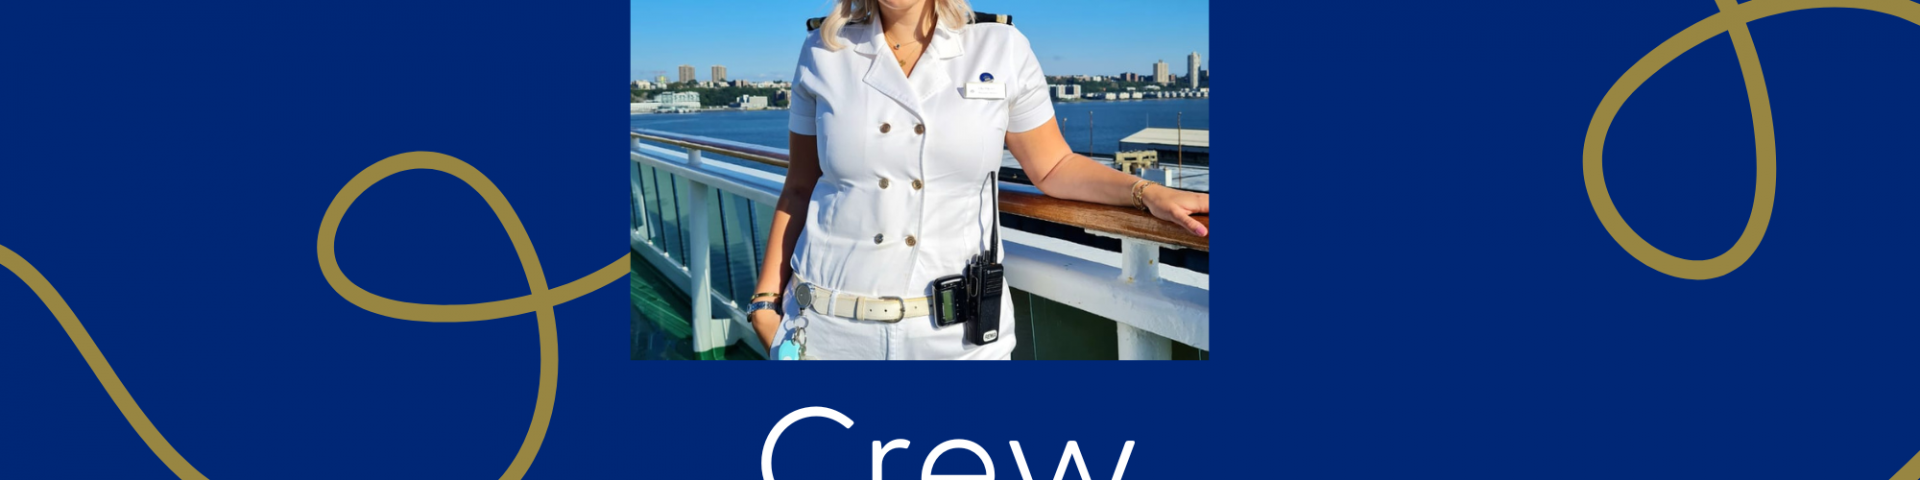 doctor cruise ship salary